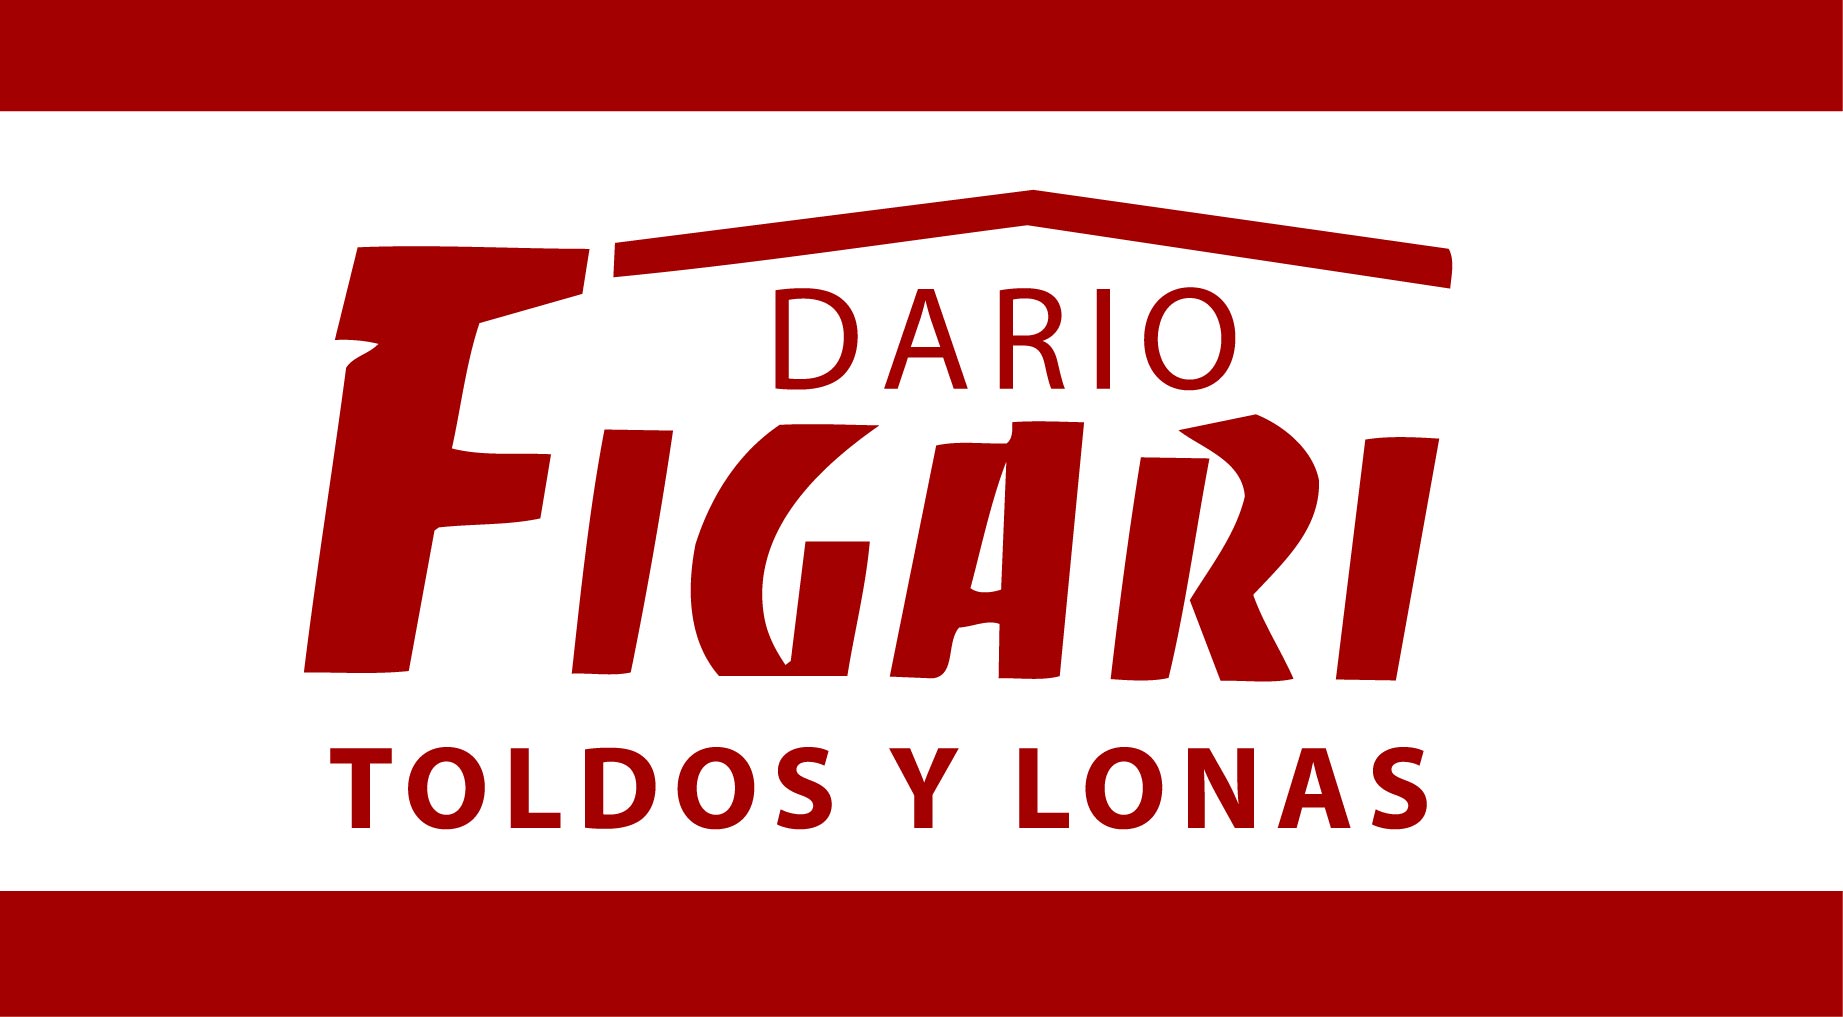 Dario Figari 